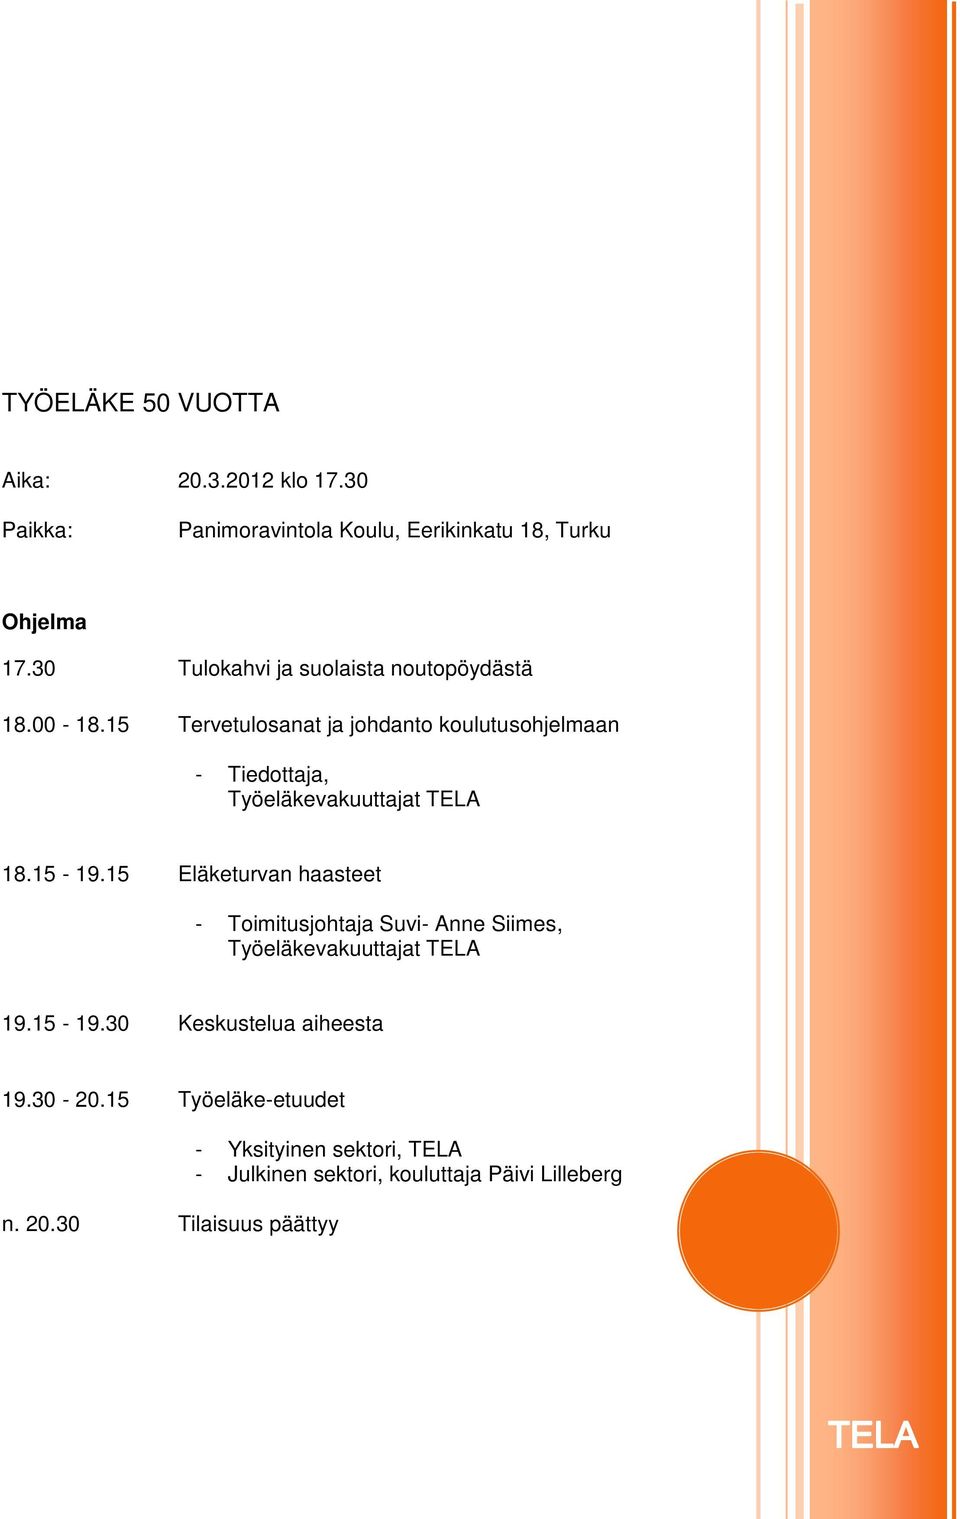 15 Tervetulosanat ja johdanto koulutusohjelmaan - Tiedottaja, Työeläkevakuuttajat TELA 18.15-19.